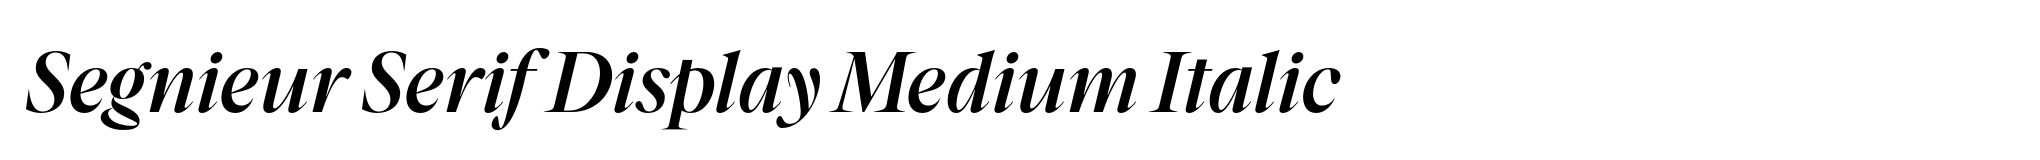 Segnieur Serif Display Medium Italic image